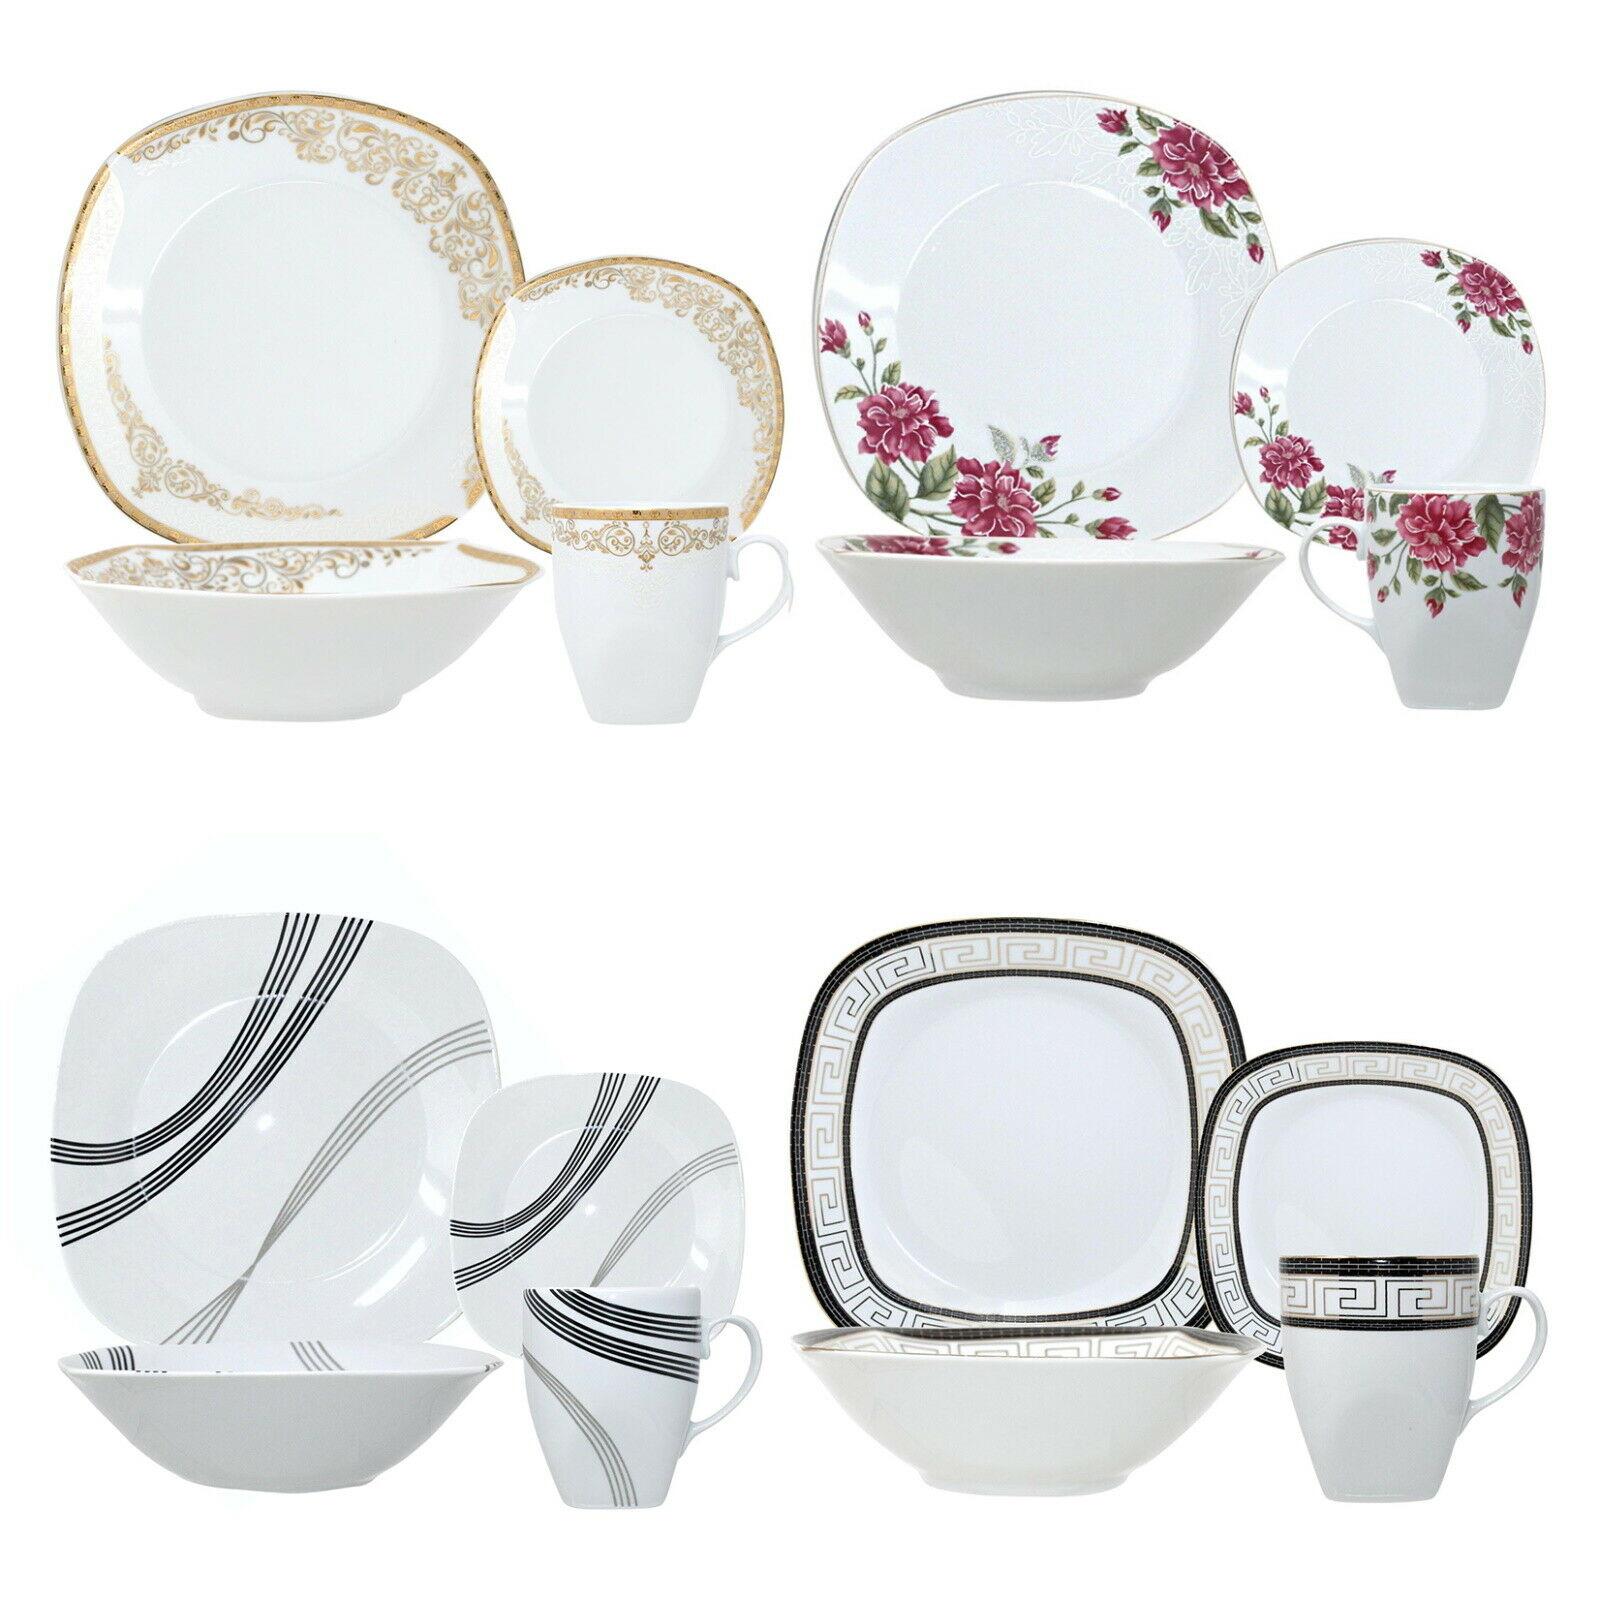 16pc Dinner Set Bowl Plate Mug Soup Side Porcelain Cup Gift Kitchen Service Black Patterns 